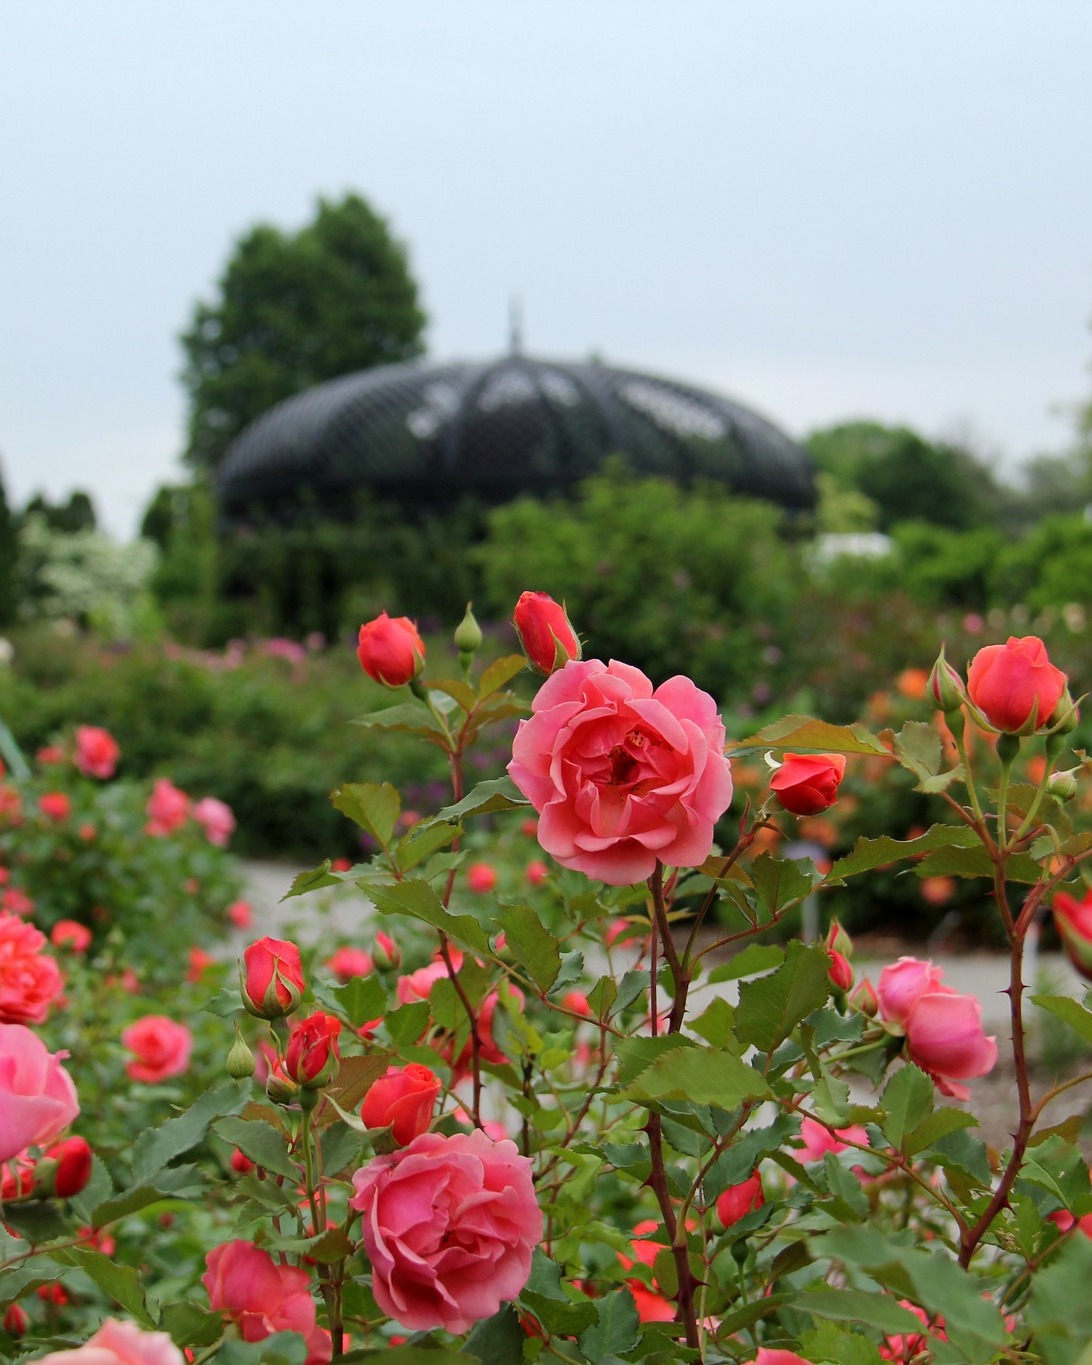 Rose Garden Collection - Royal Botanical Gardens